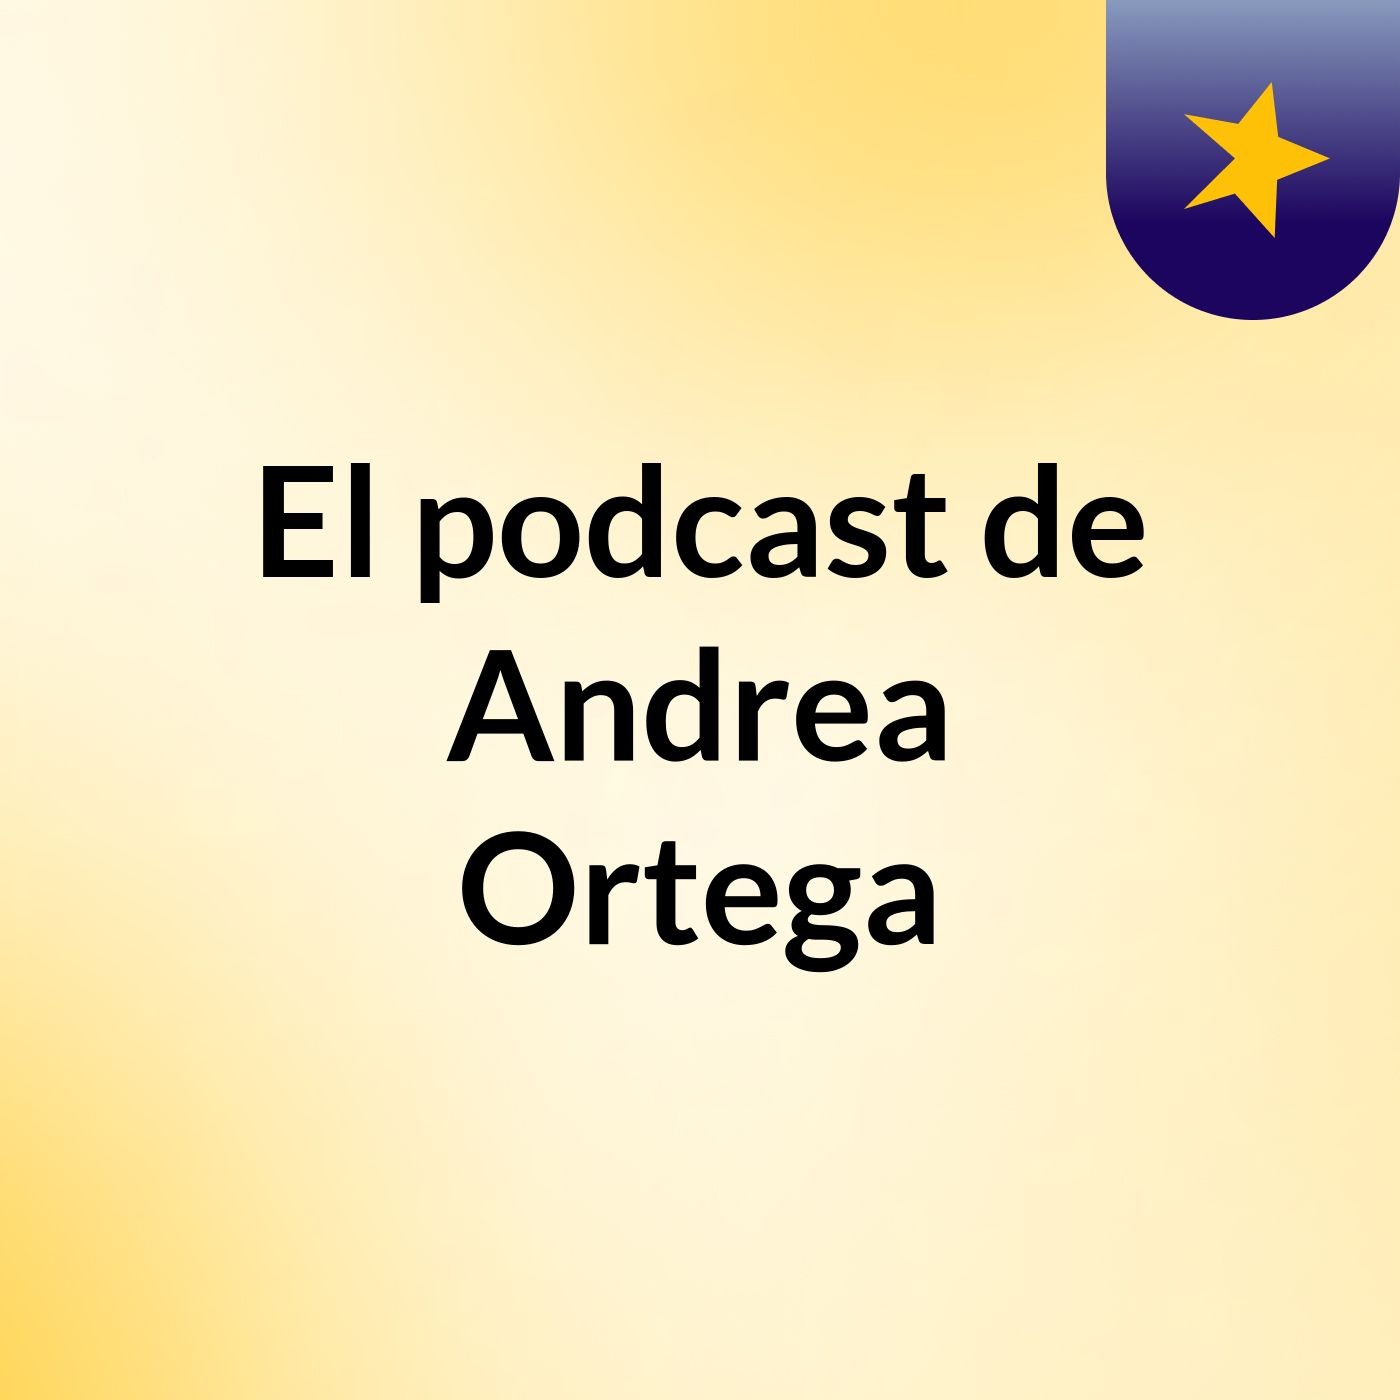 El podcast de Andrea Ortega